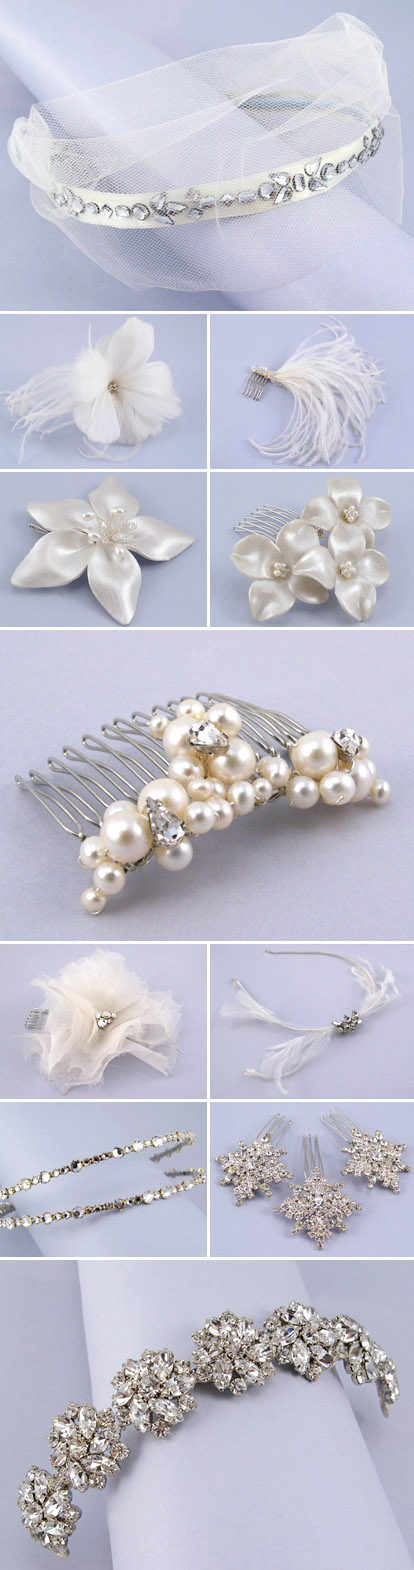 Bridal veils and hair accessories by Sara Gabriel